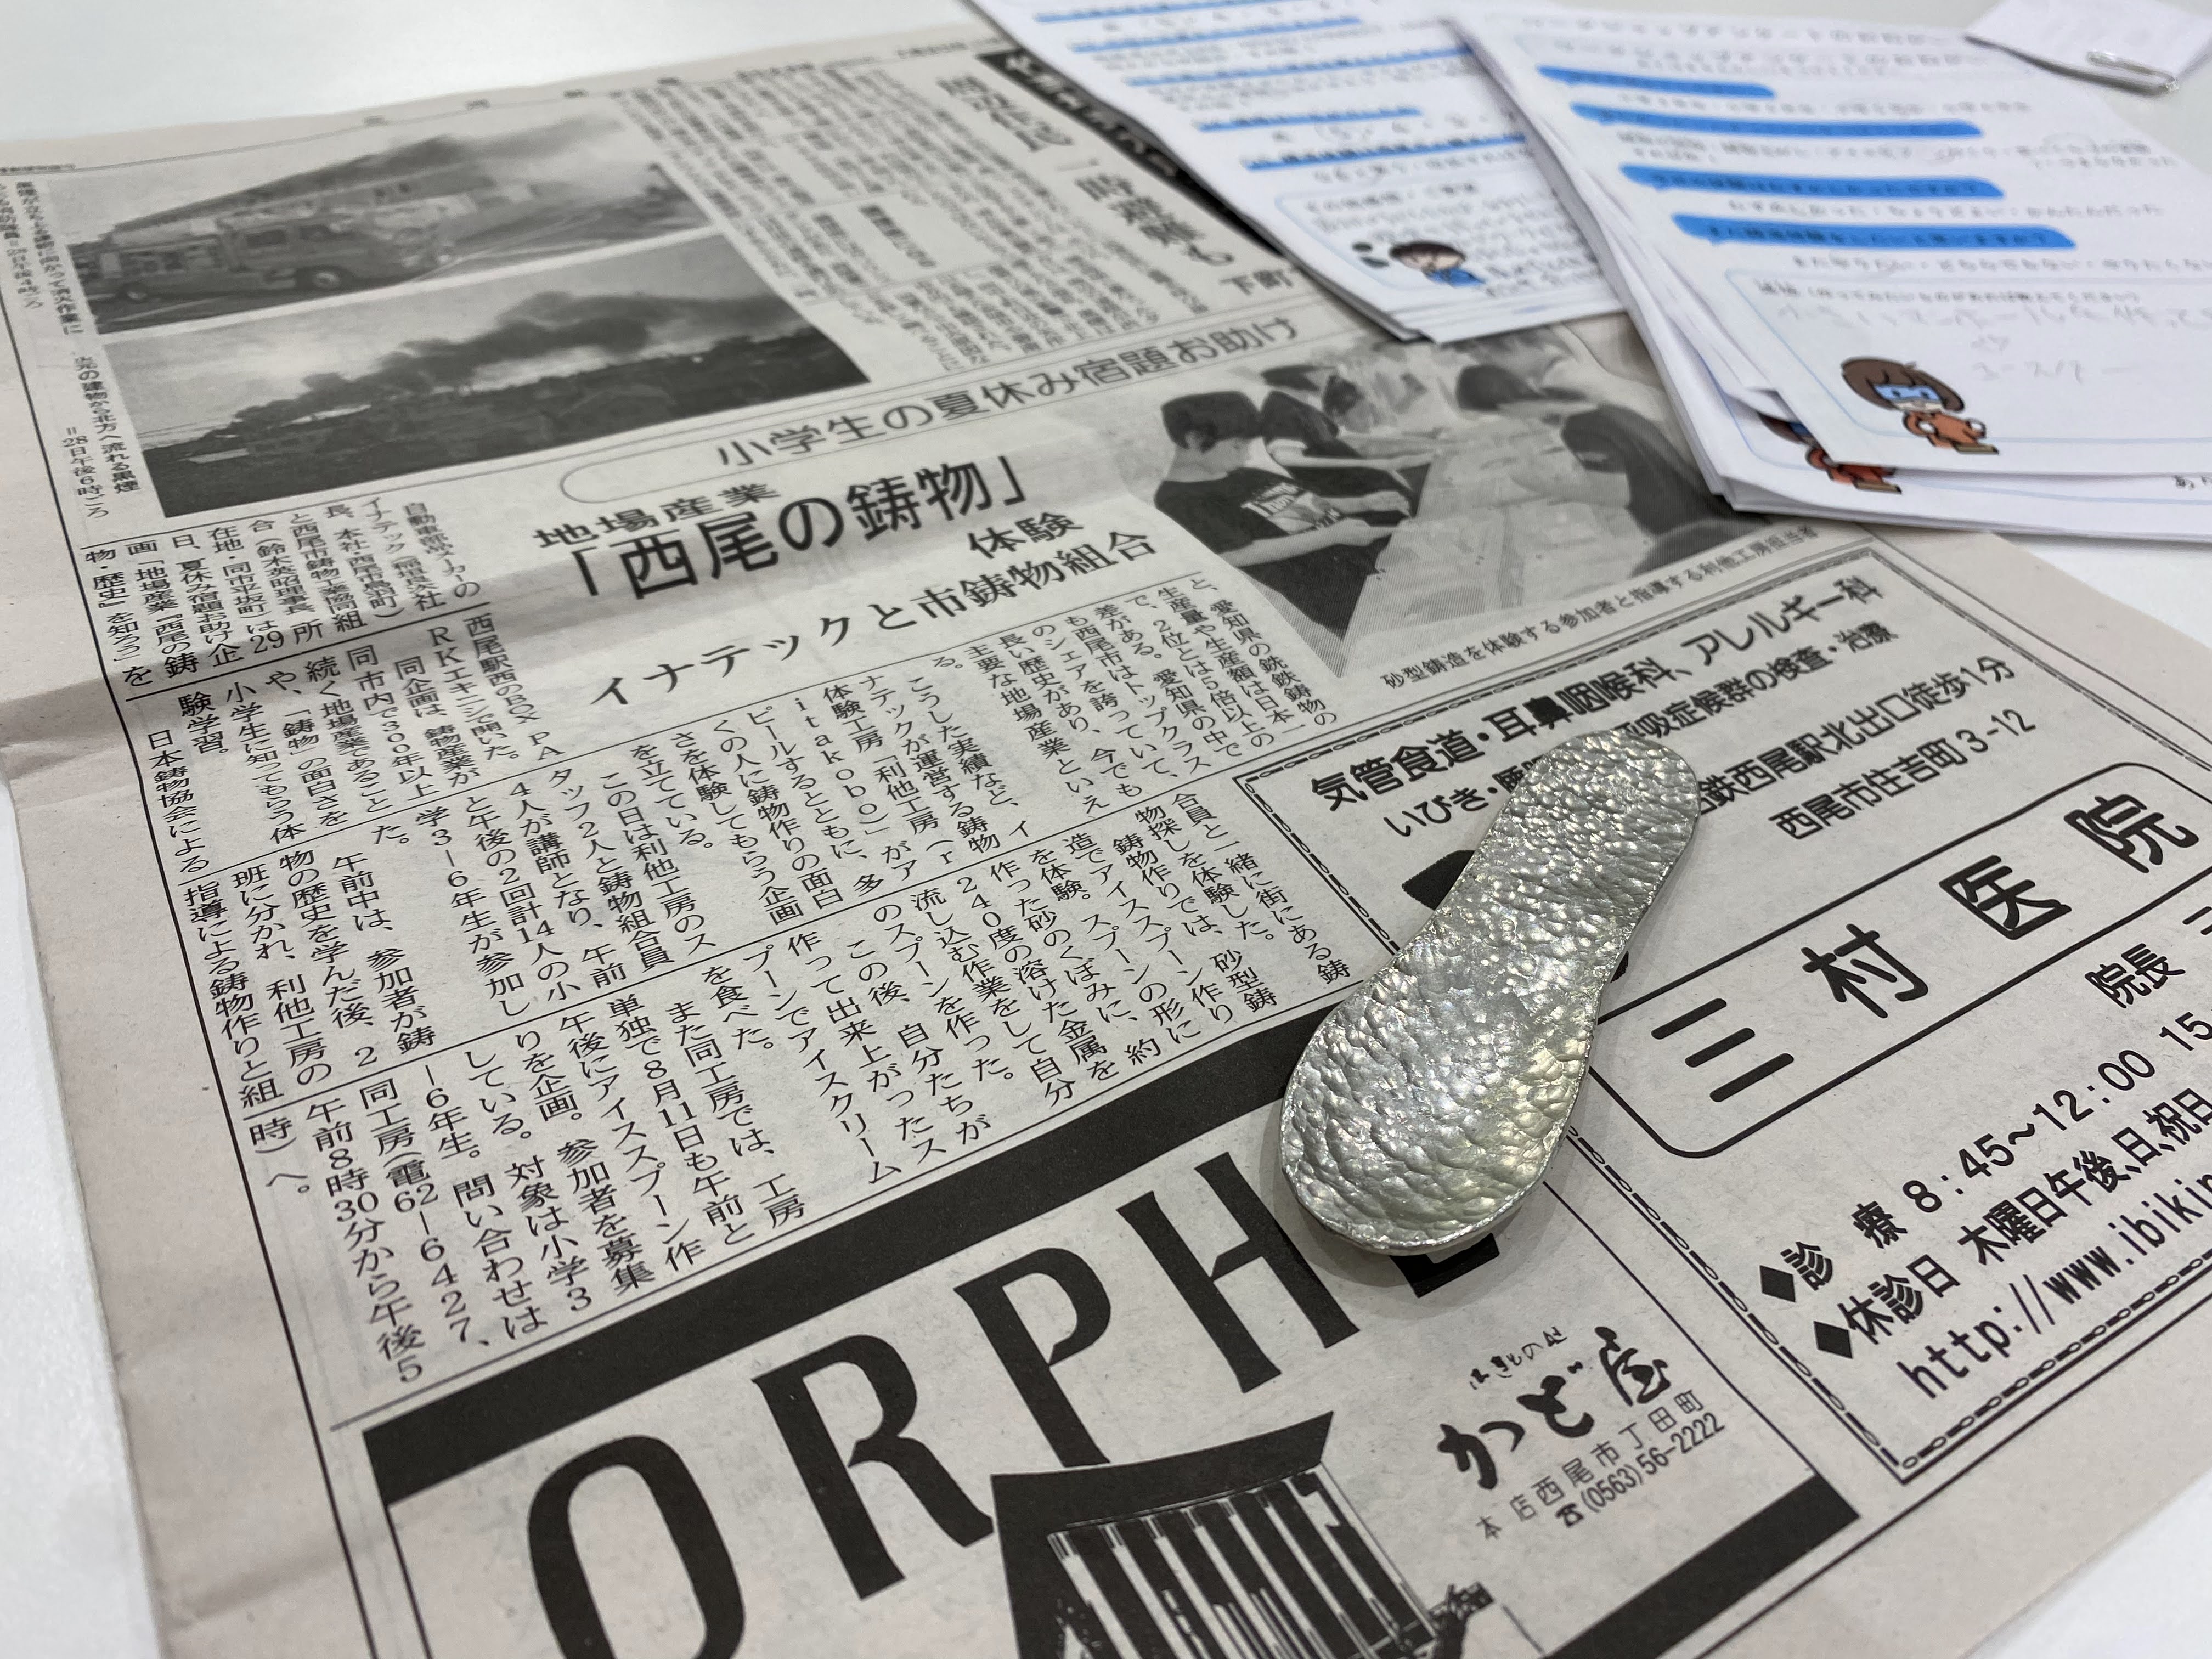 【メディア情報】三河新報に「地場産業『西尾の鋳物』体験」が掲載されました